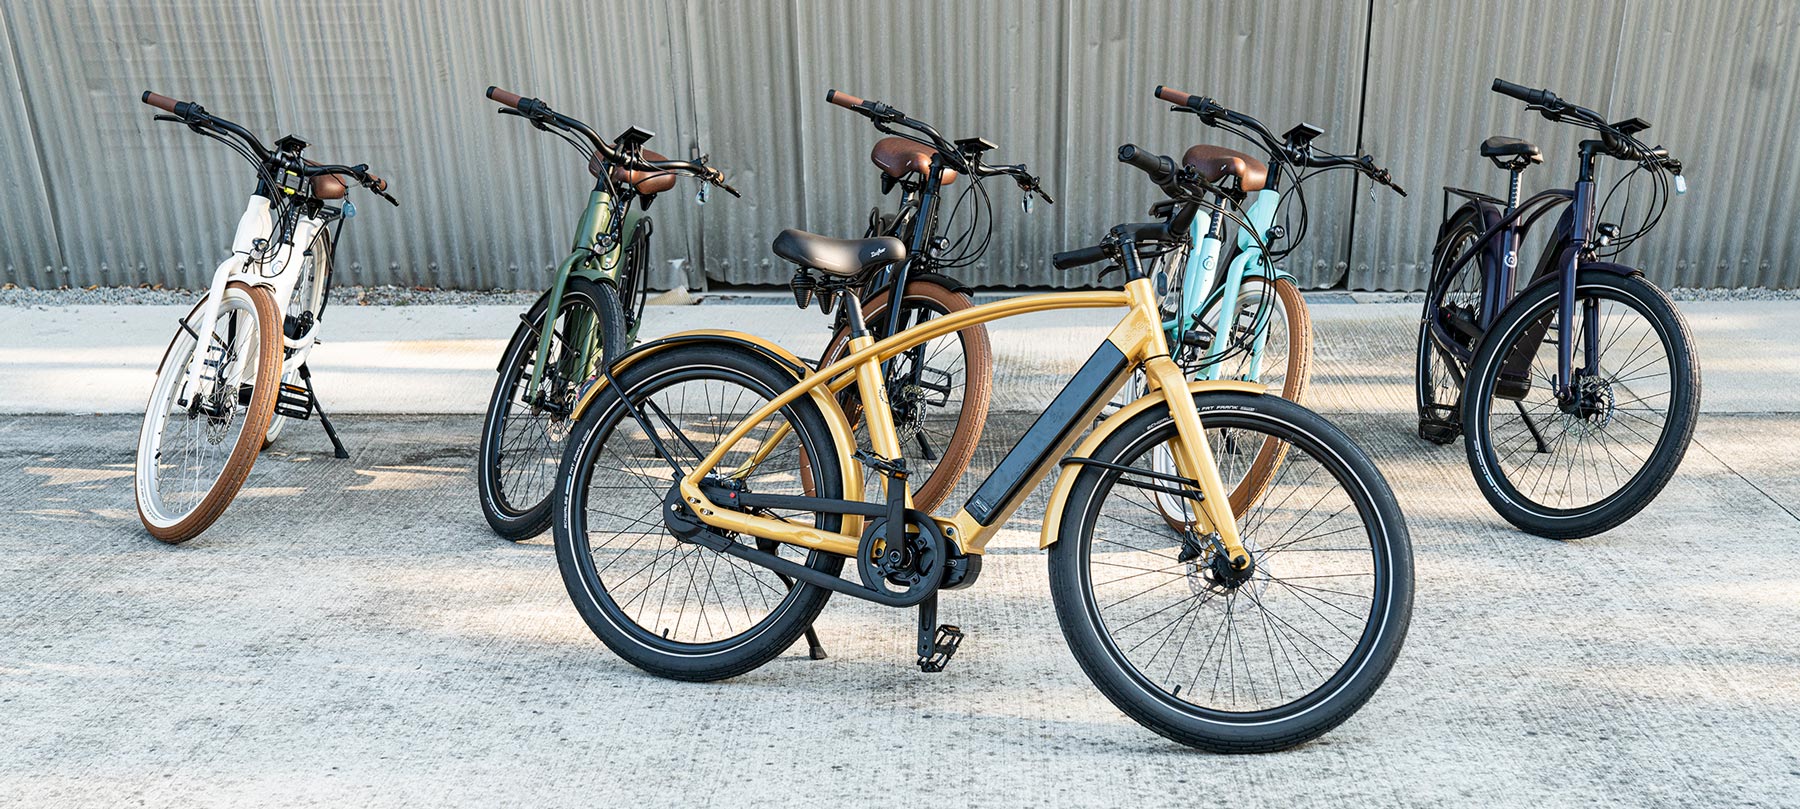 gamme de vélo électrique connecté de marque française haut de gamme Reinebike